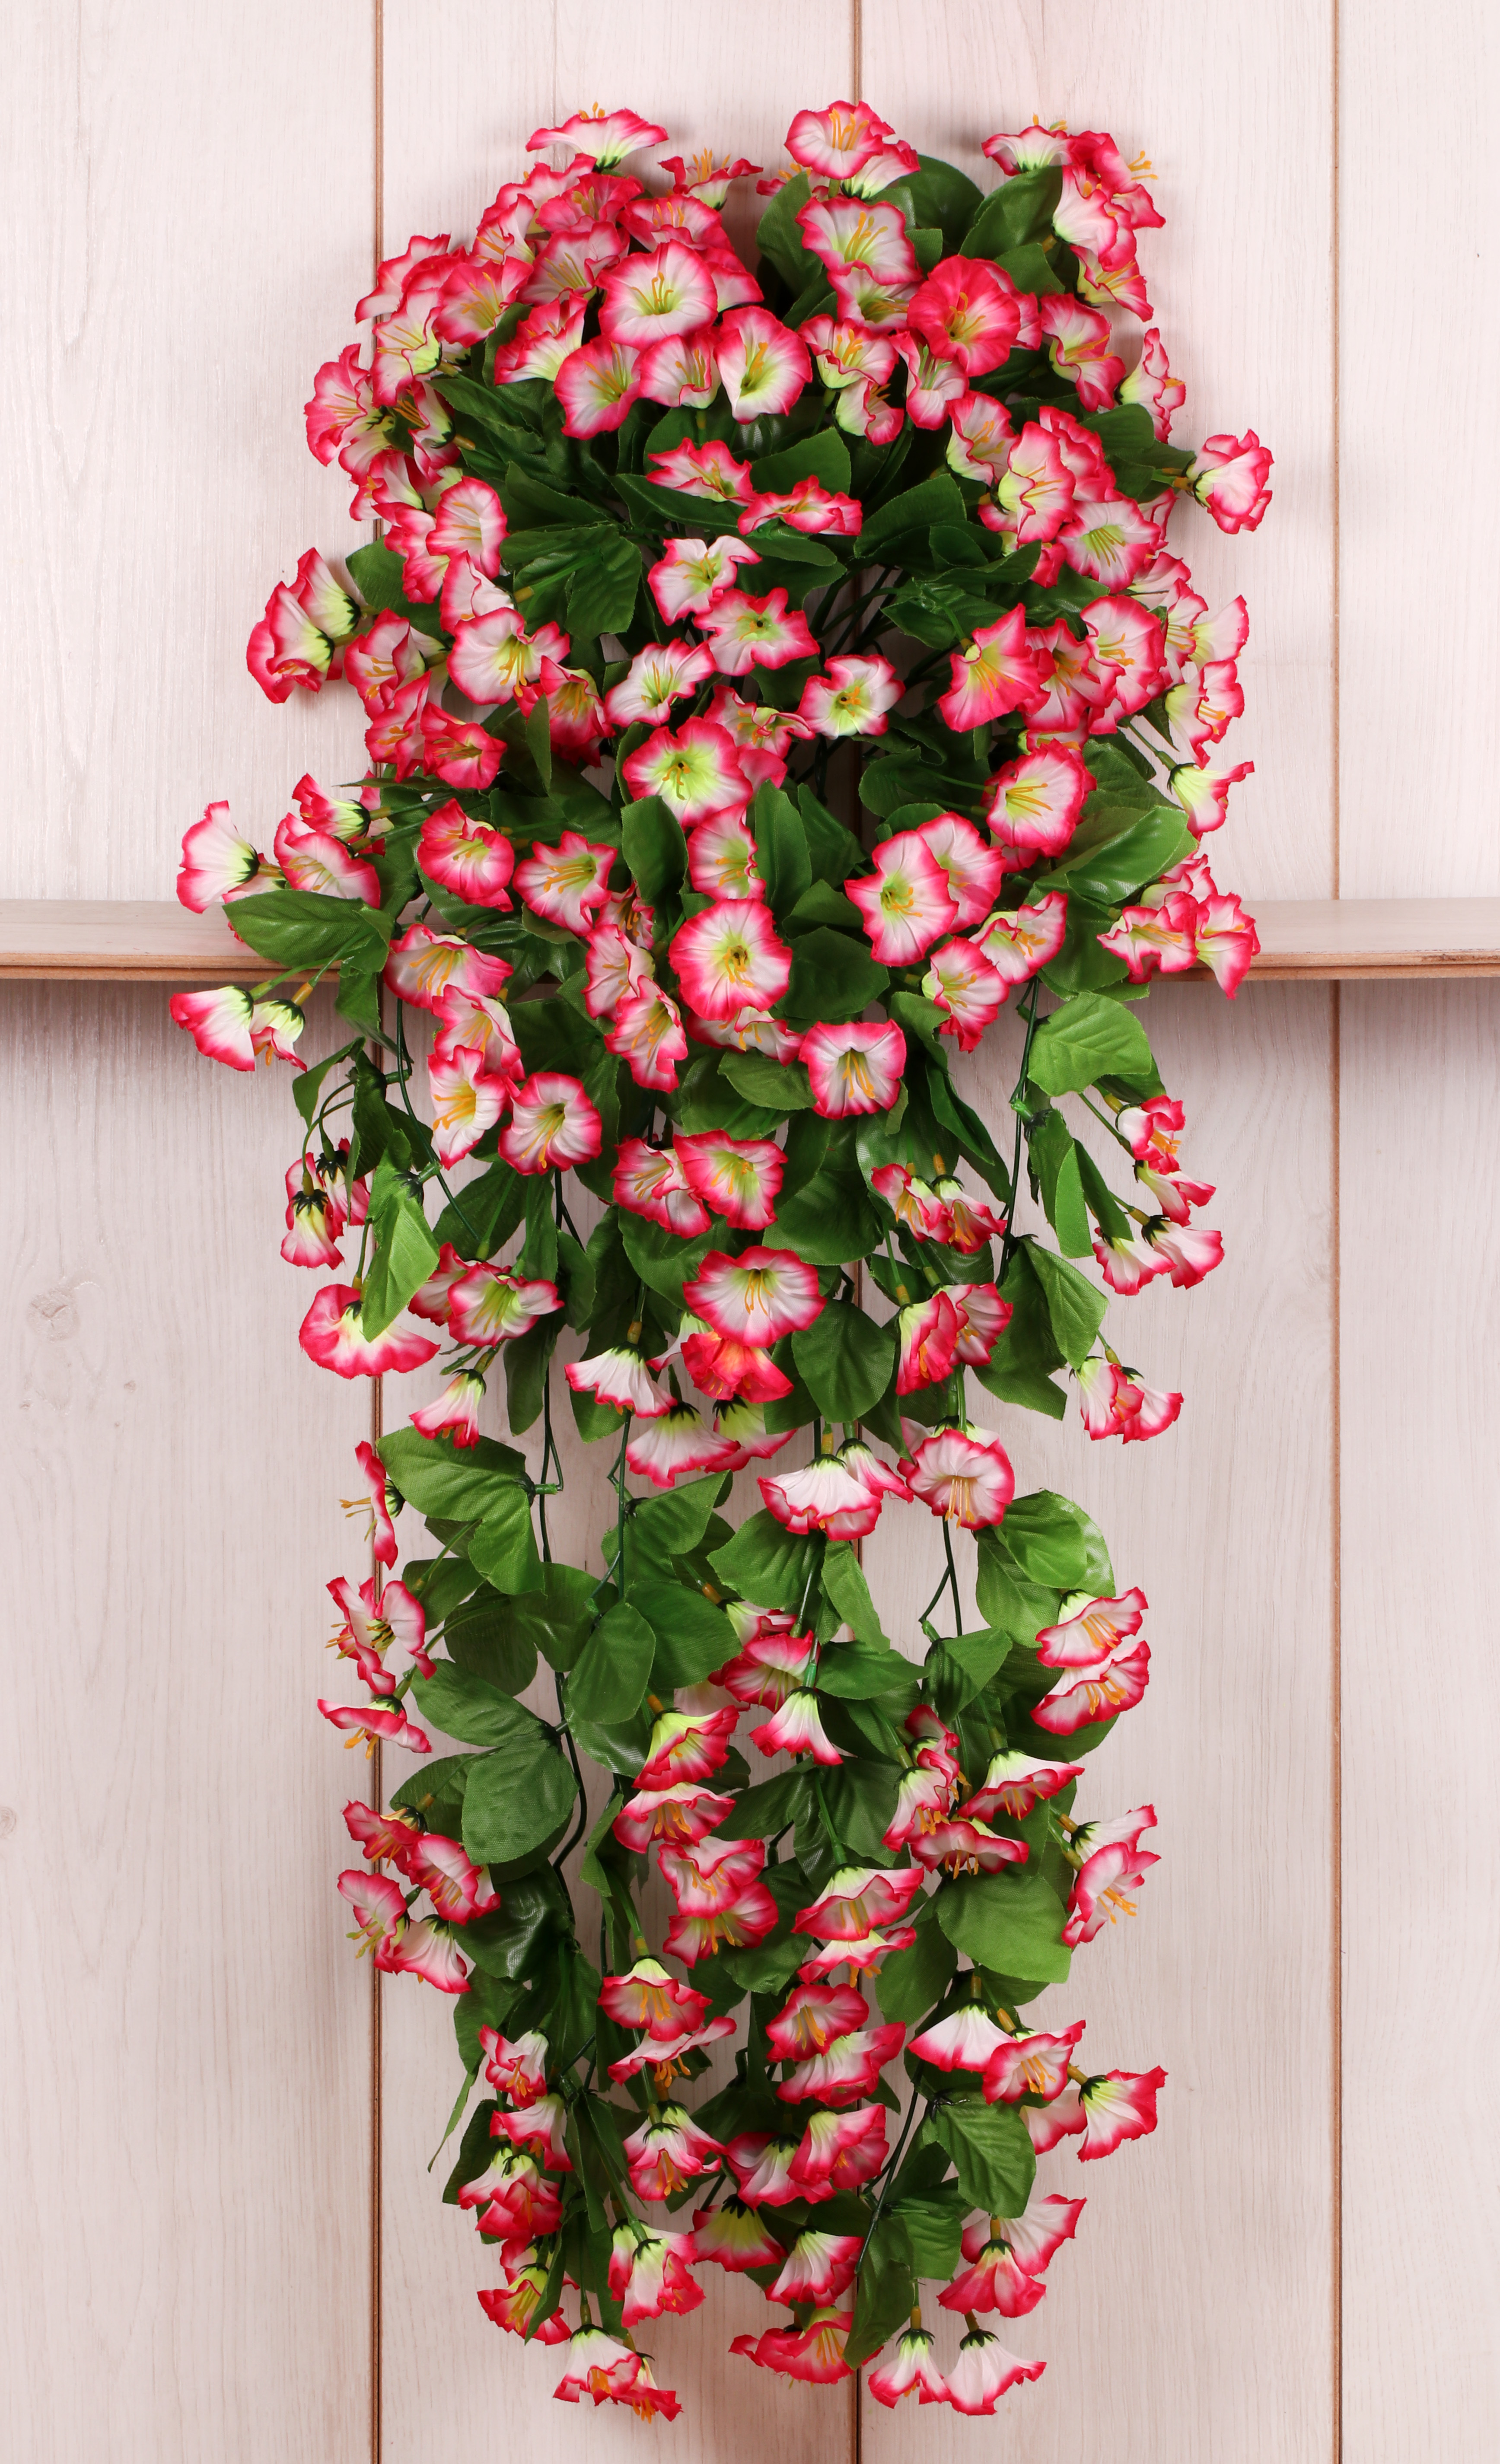 Купить искусственные ампельные цветы цветы и подарки с доставкой по москве недорого